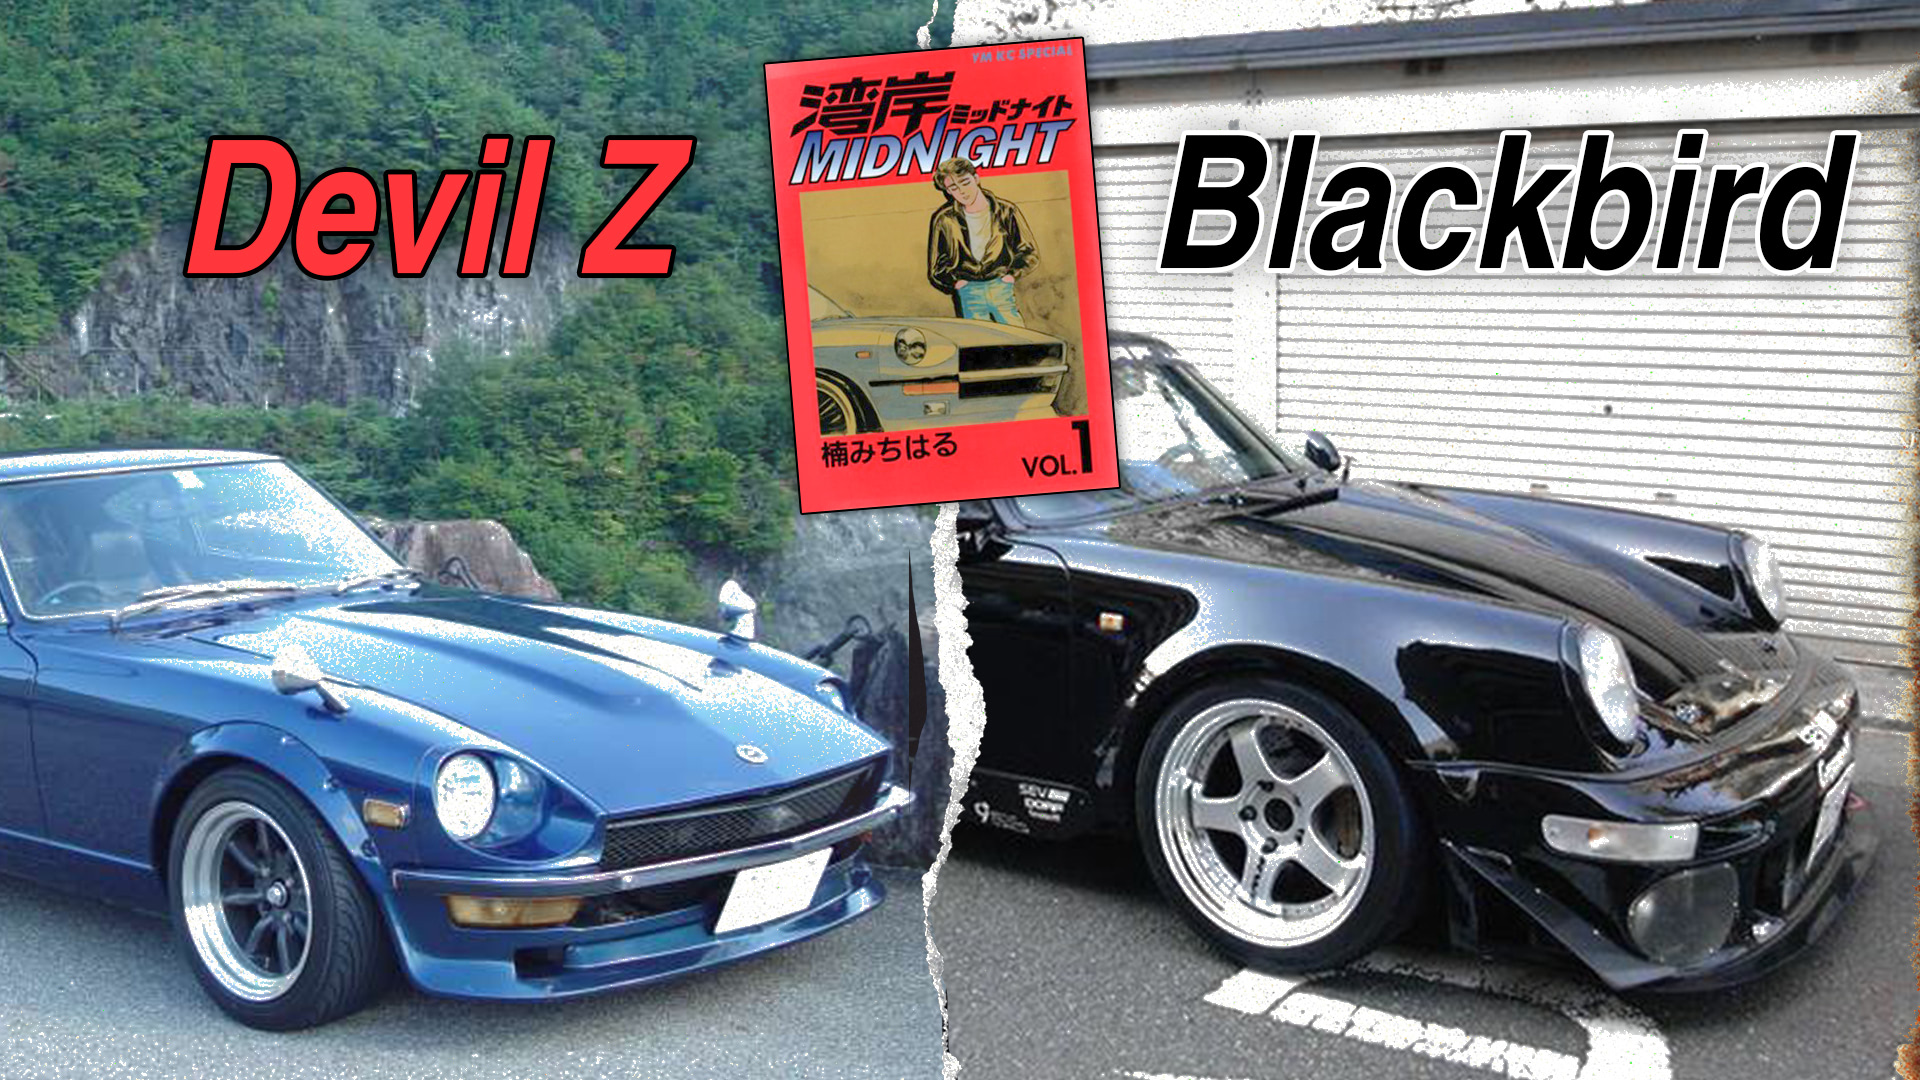 Wangan Midnight, Devil Z and Blackbird Porsche